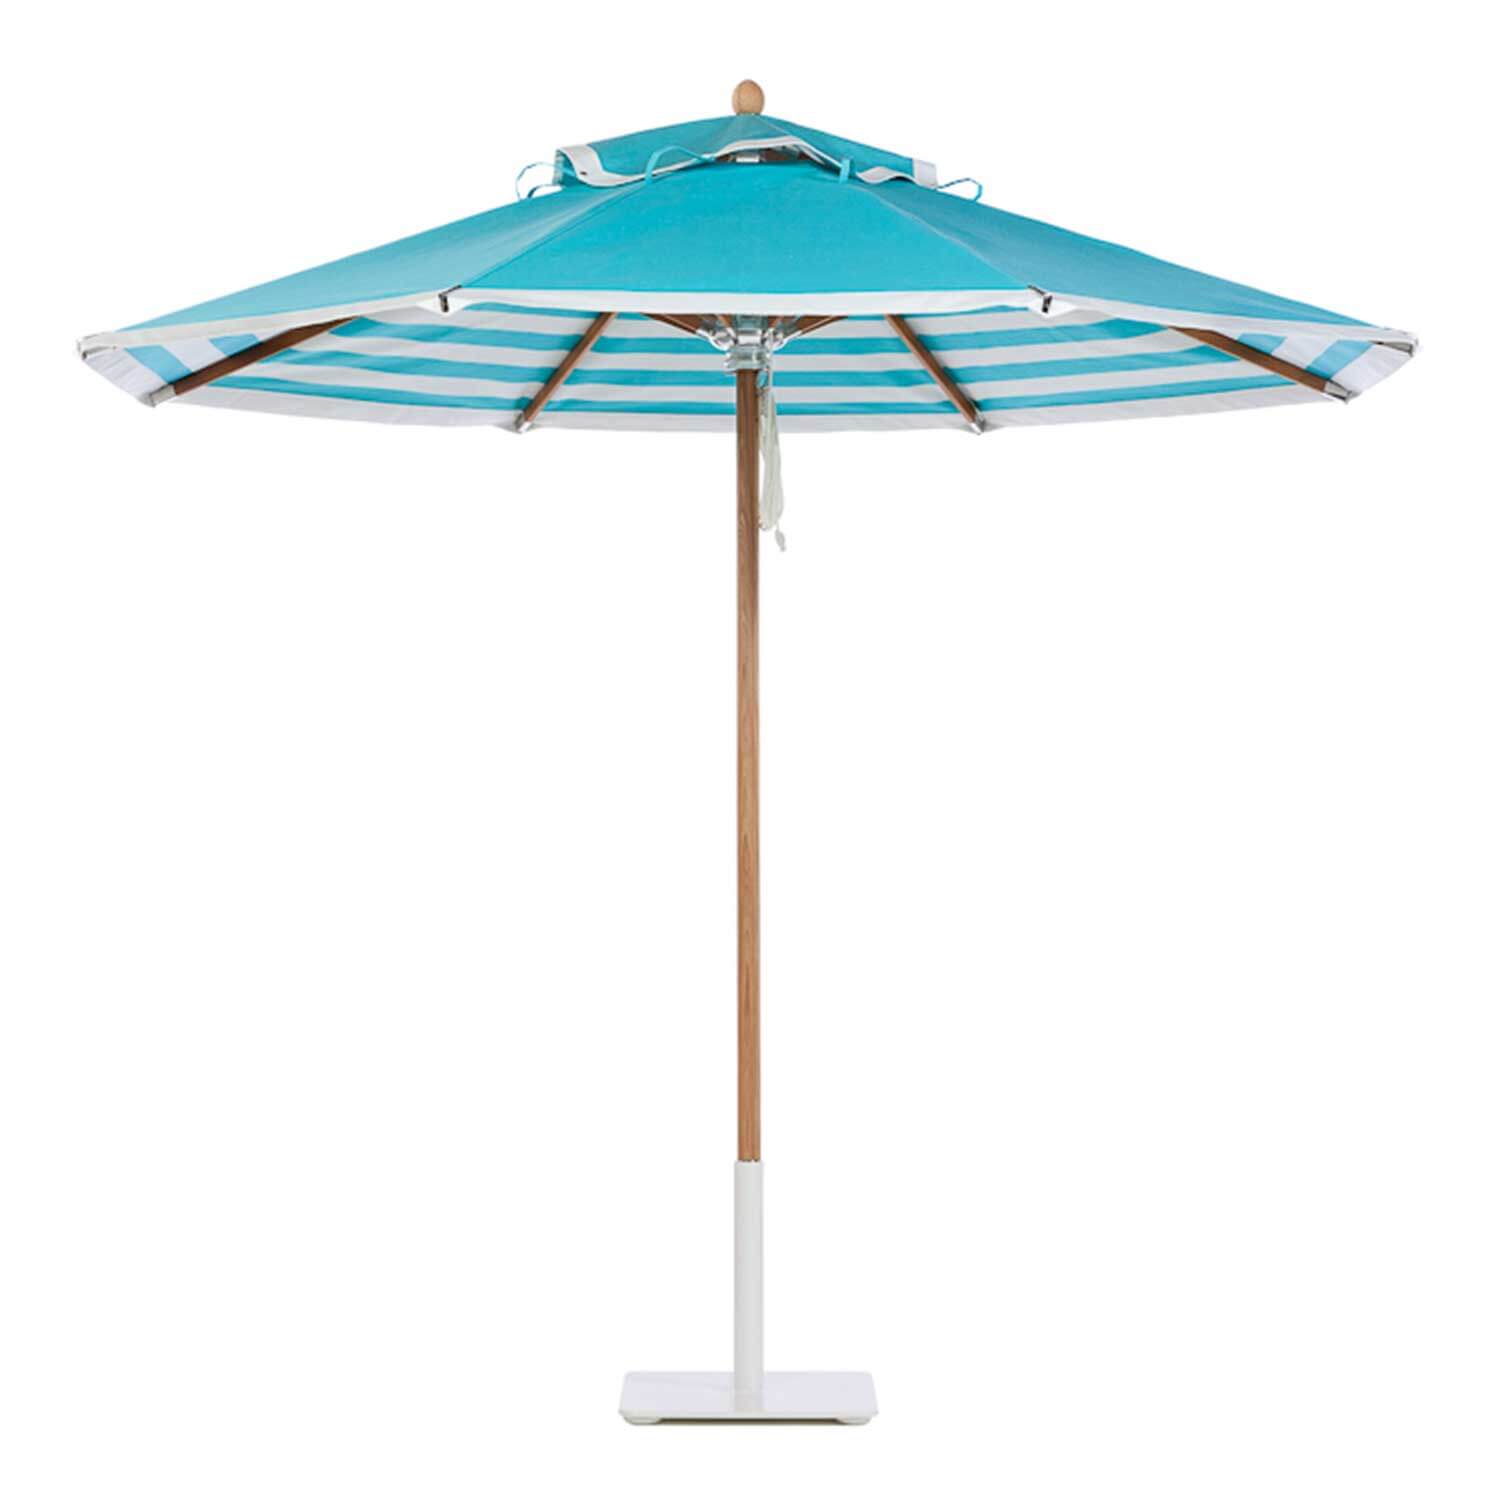 Aqua Sea Umbrella Image